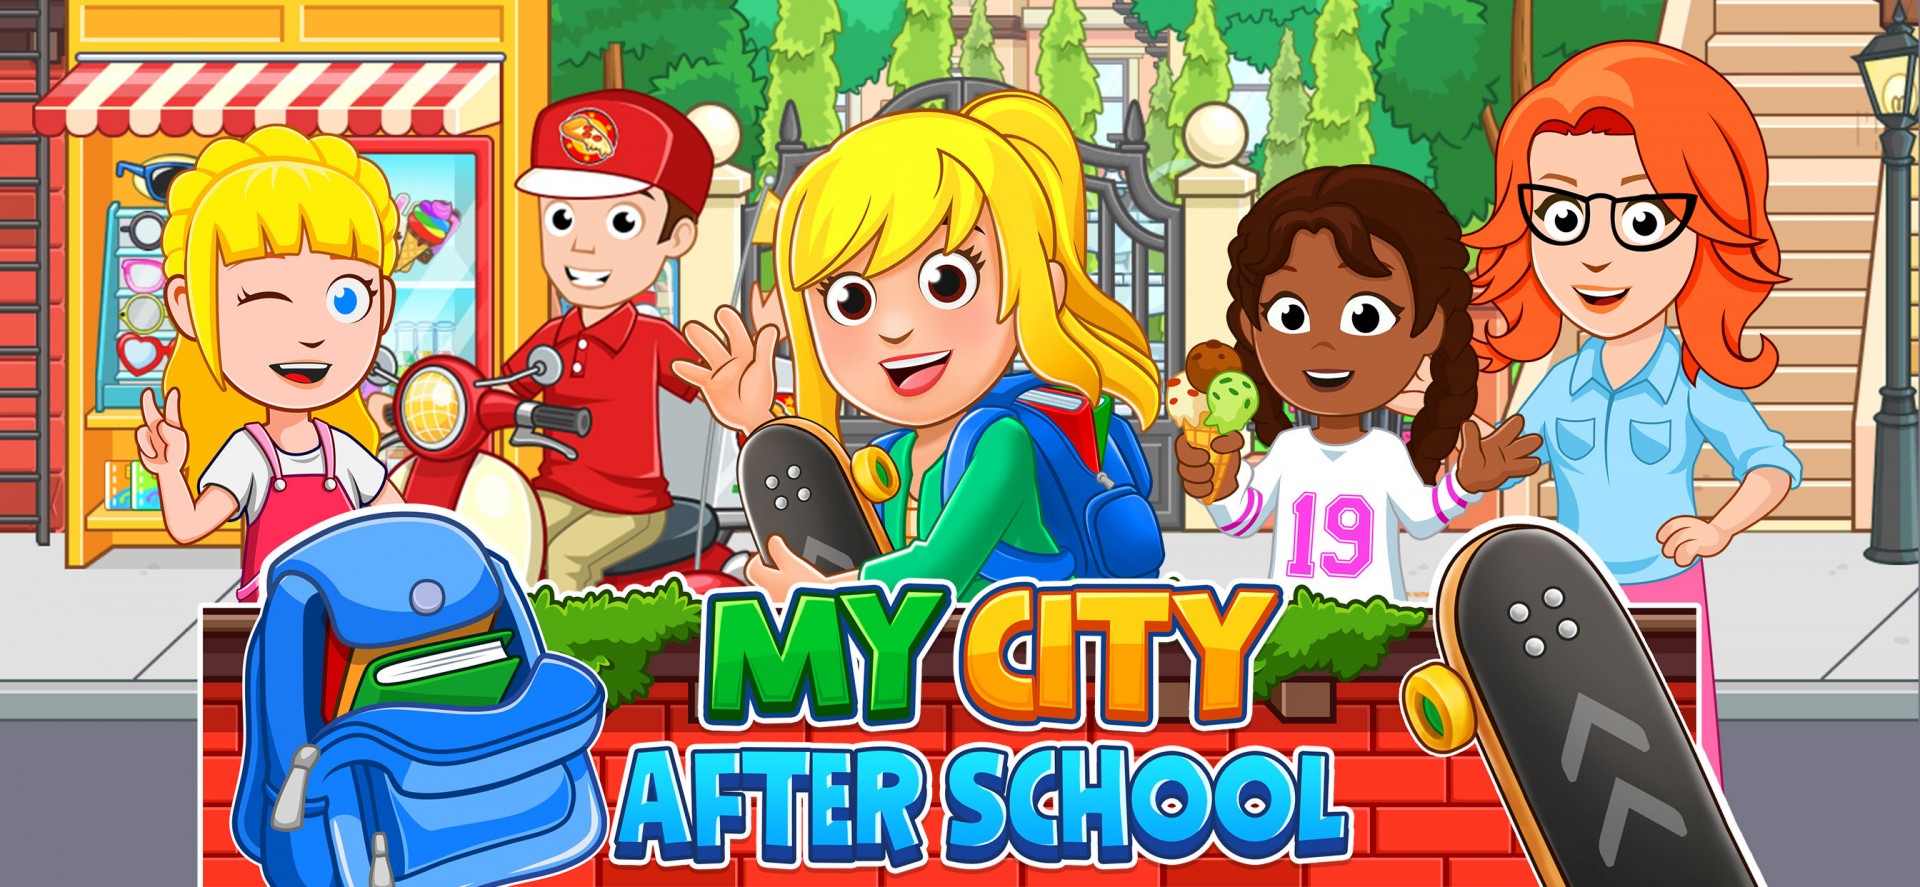 My school games. My City дом .. My City моих. Tag after School игра. Игры для всей школы на улицы.